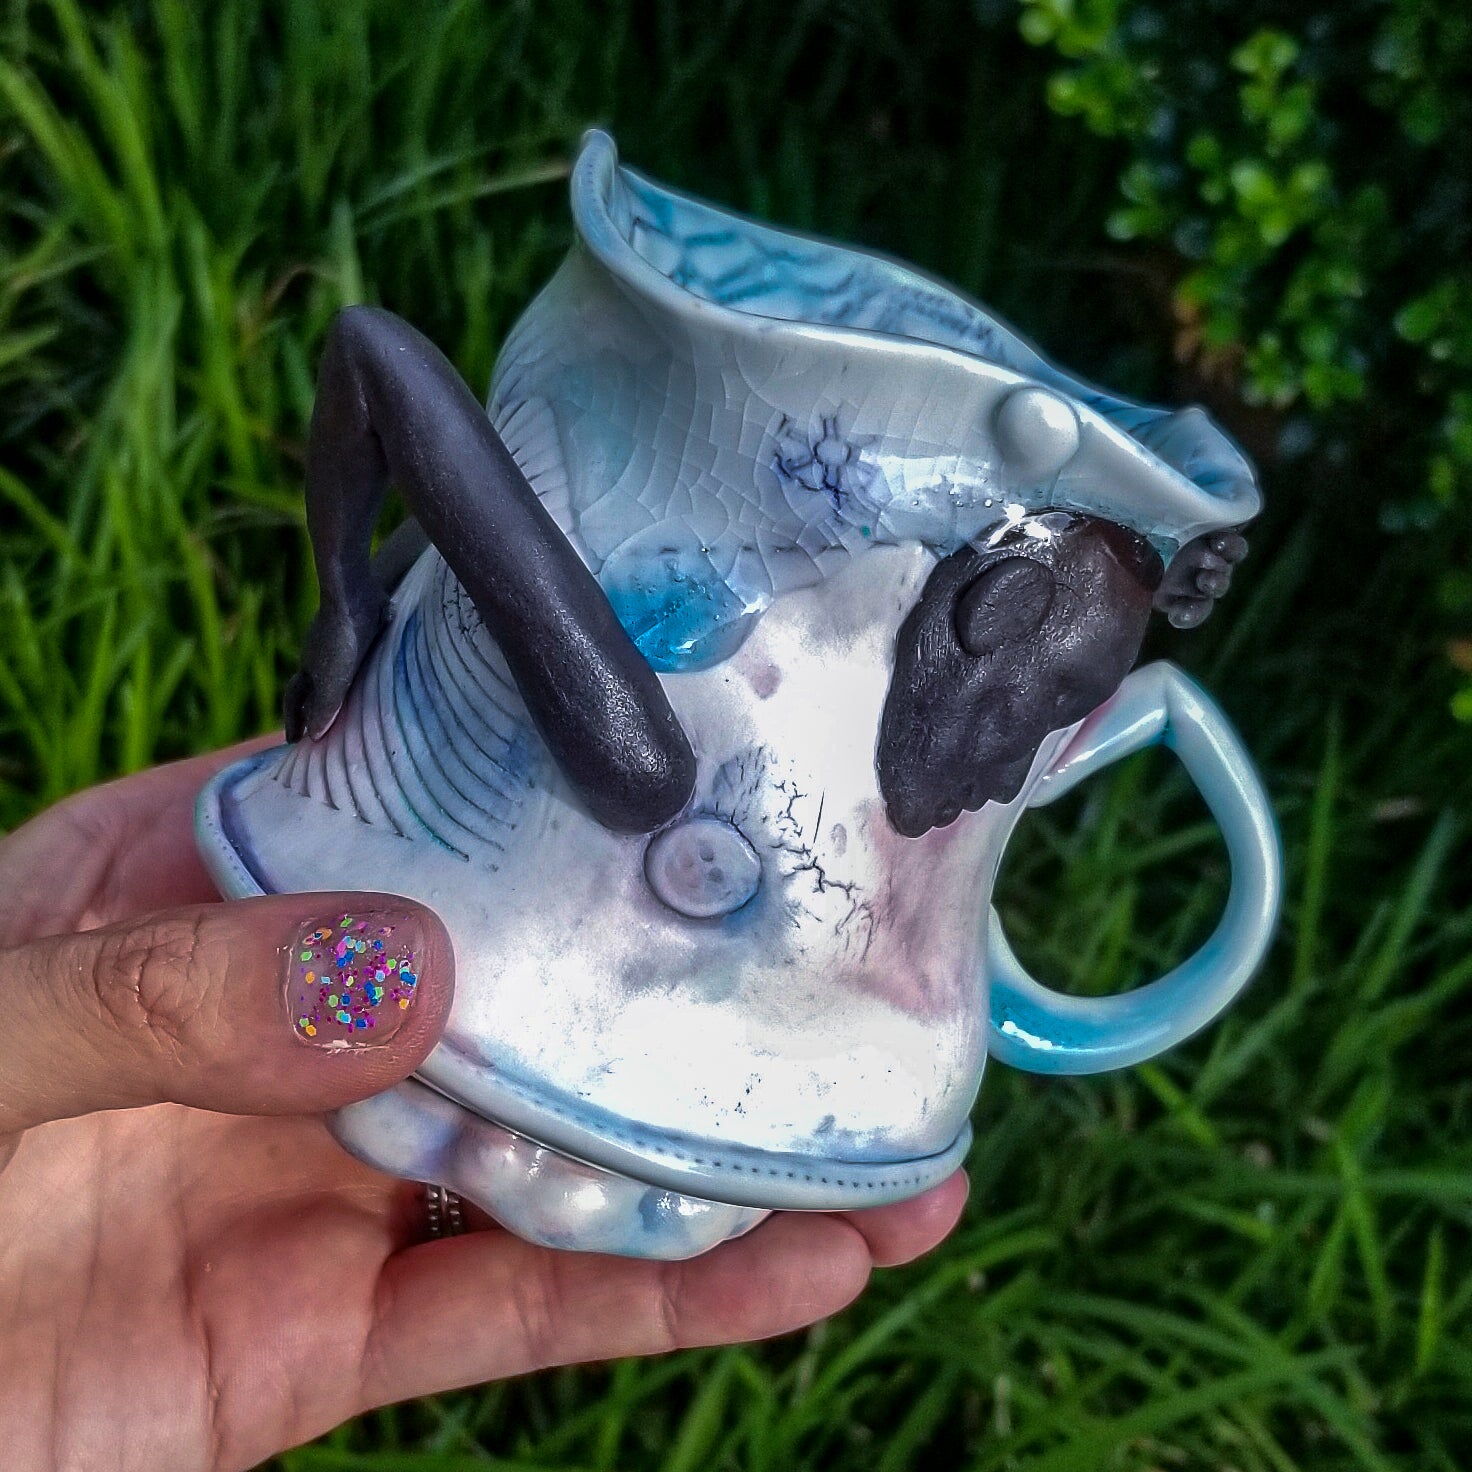 Handmade porcelain mug with figurative sculptural elements